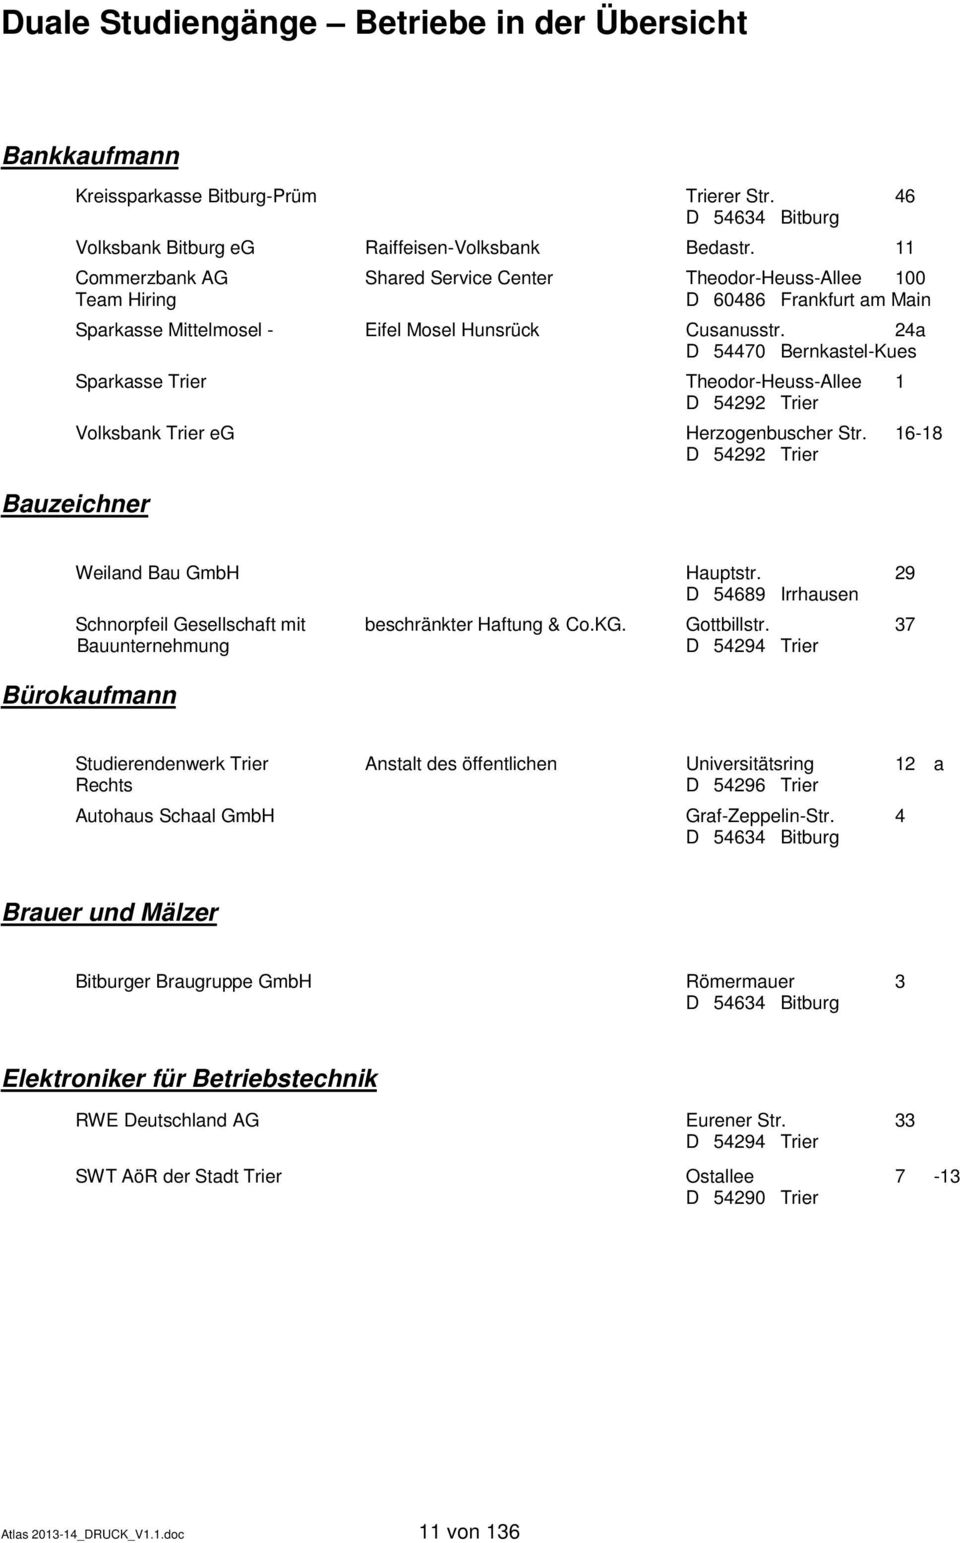 24a Sparkasse Trier Theodor-Heuss-Allee 1 Volksbank Trier eg Herzogenbuscher Str. 16-18 Weiland Bau GmbH Hauptstr. 29 D 54689 Irrhausen Schnorpfeil Gesellschaft mit beschränkter Haftung & Co.KG.